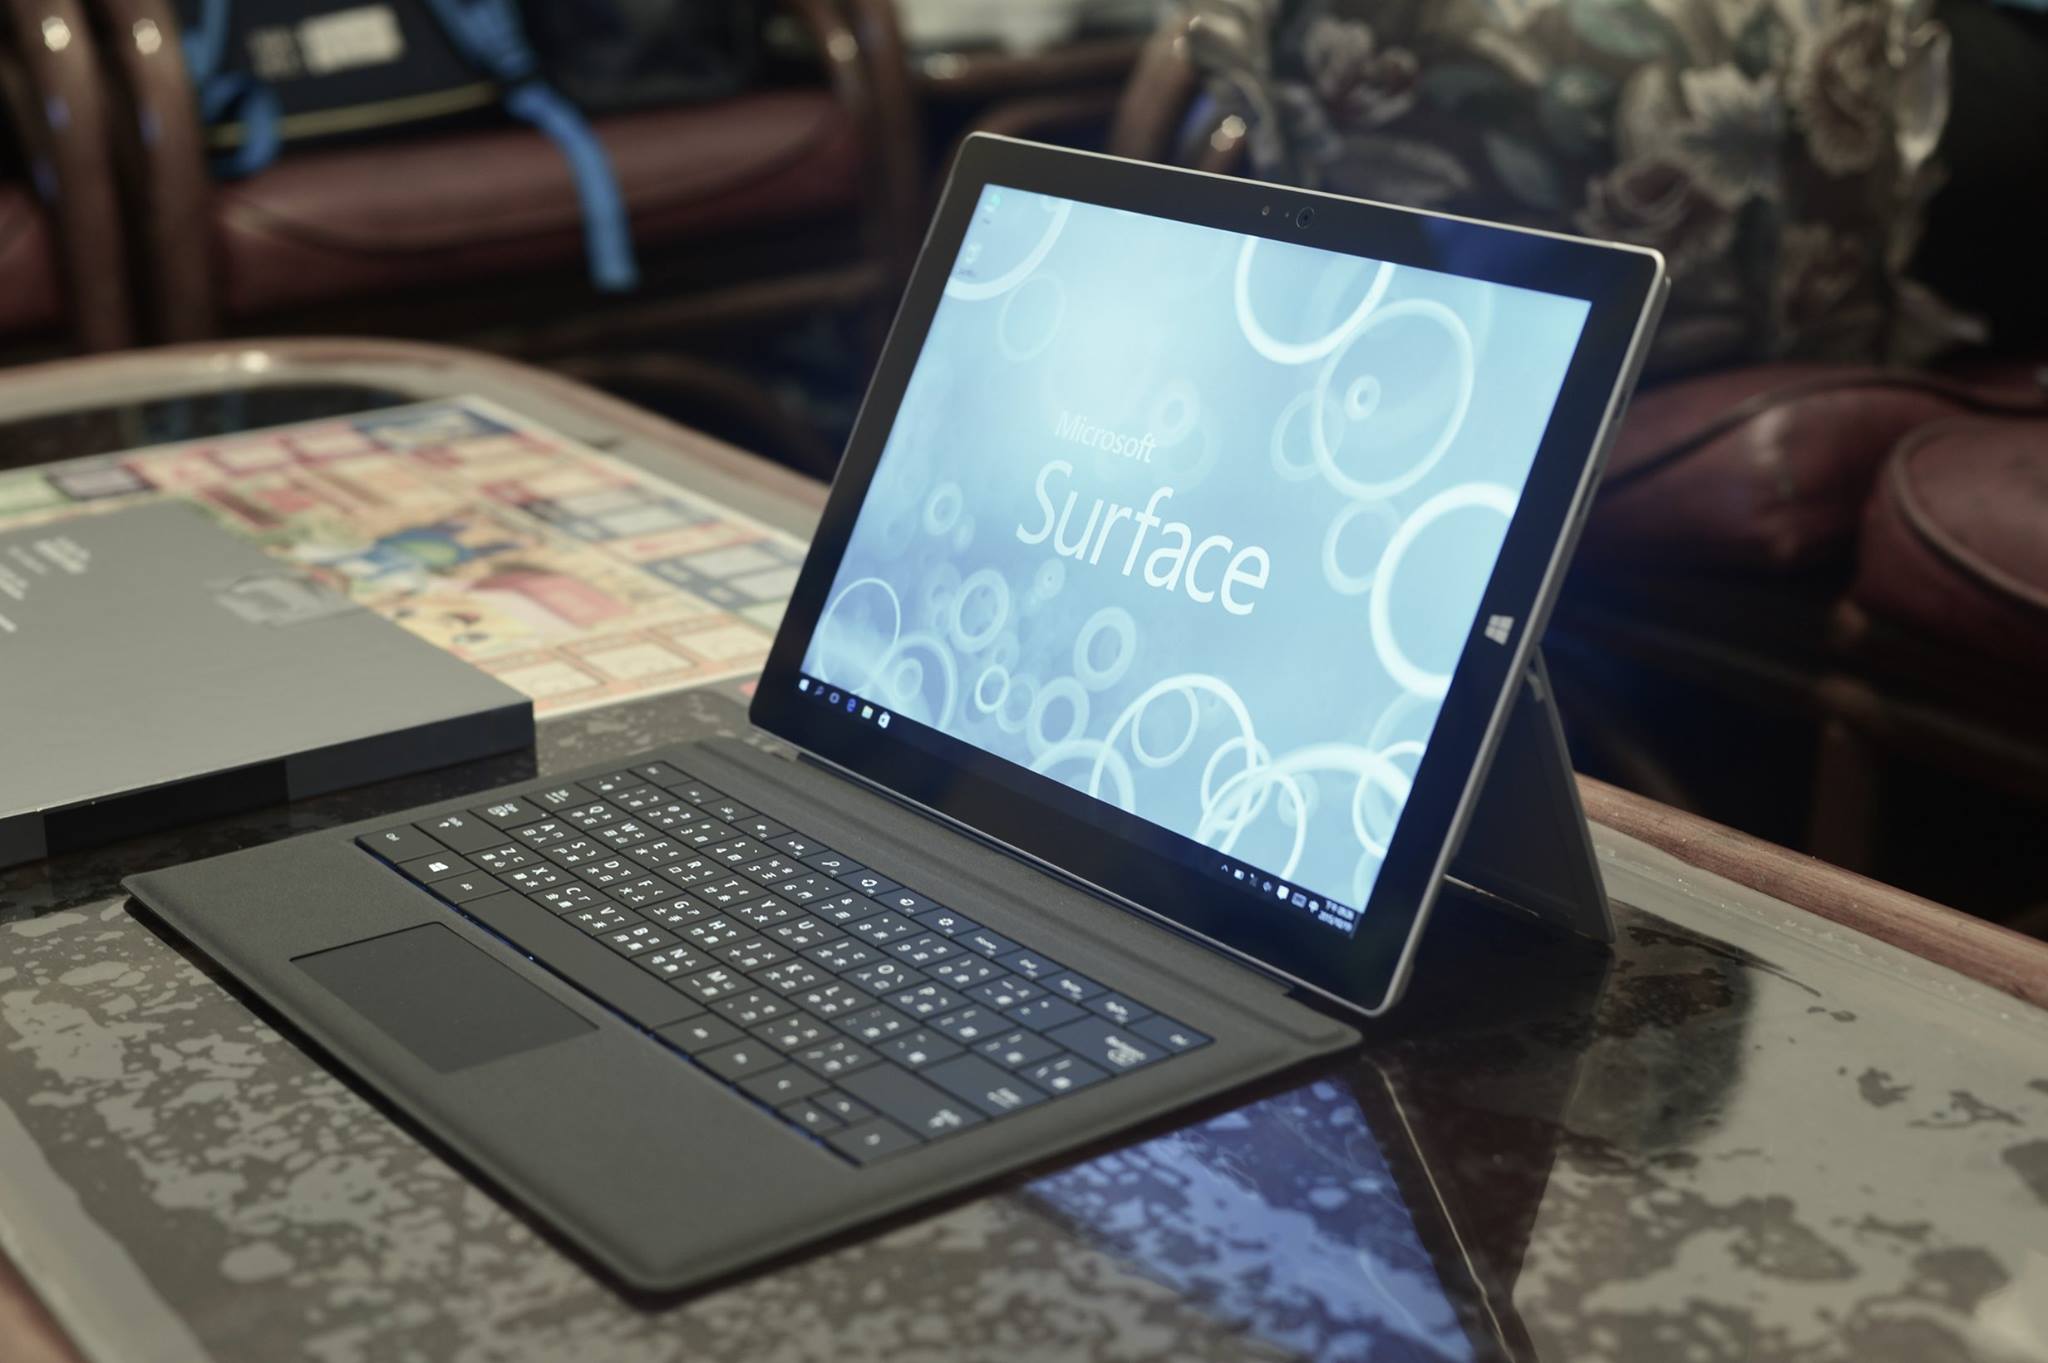 開箱文 Microsoft Surface Pro 3開箱 Knight2002y的創作 巴哈姆特